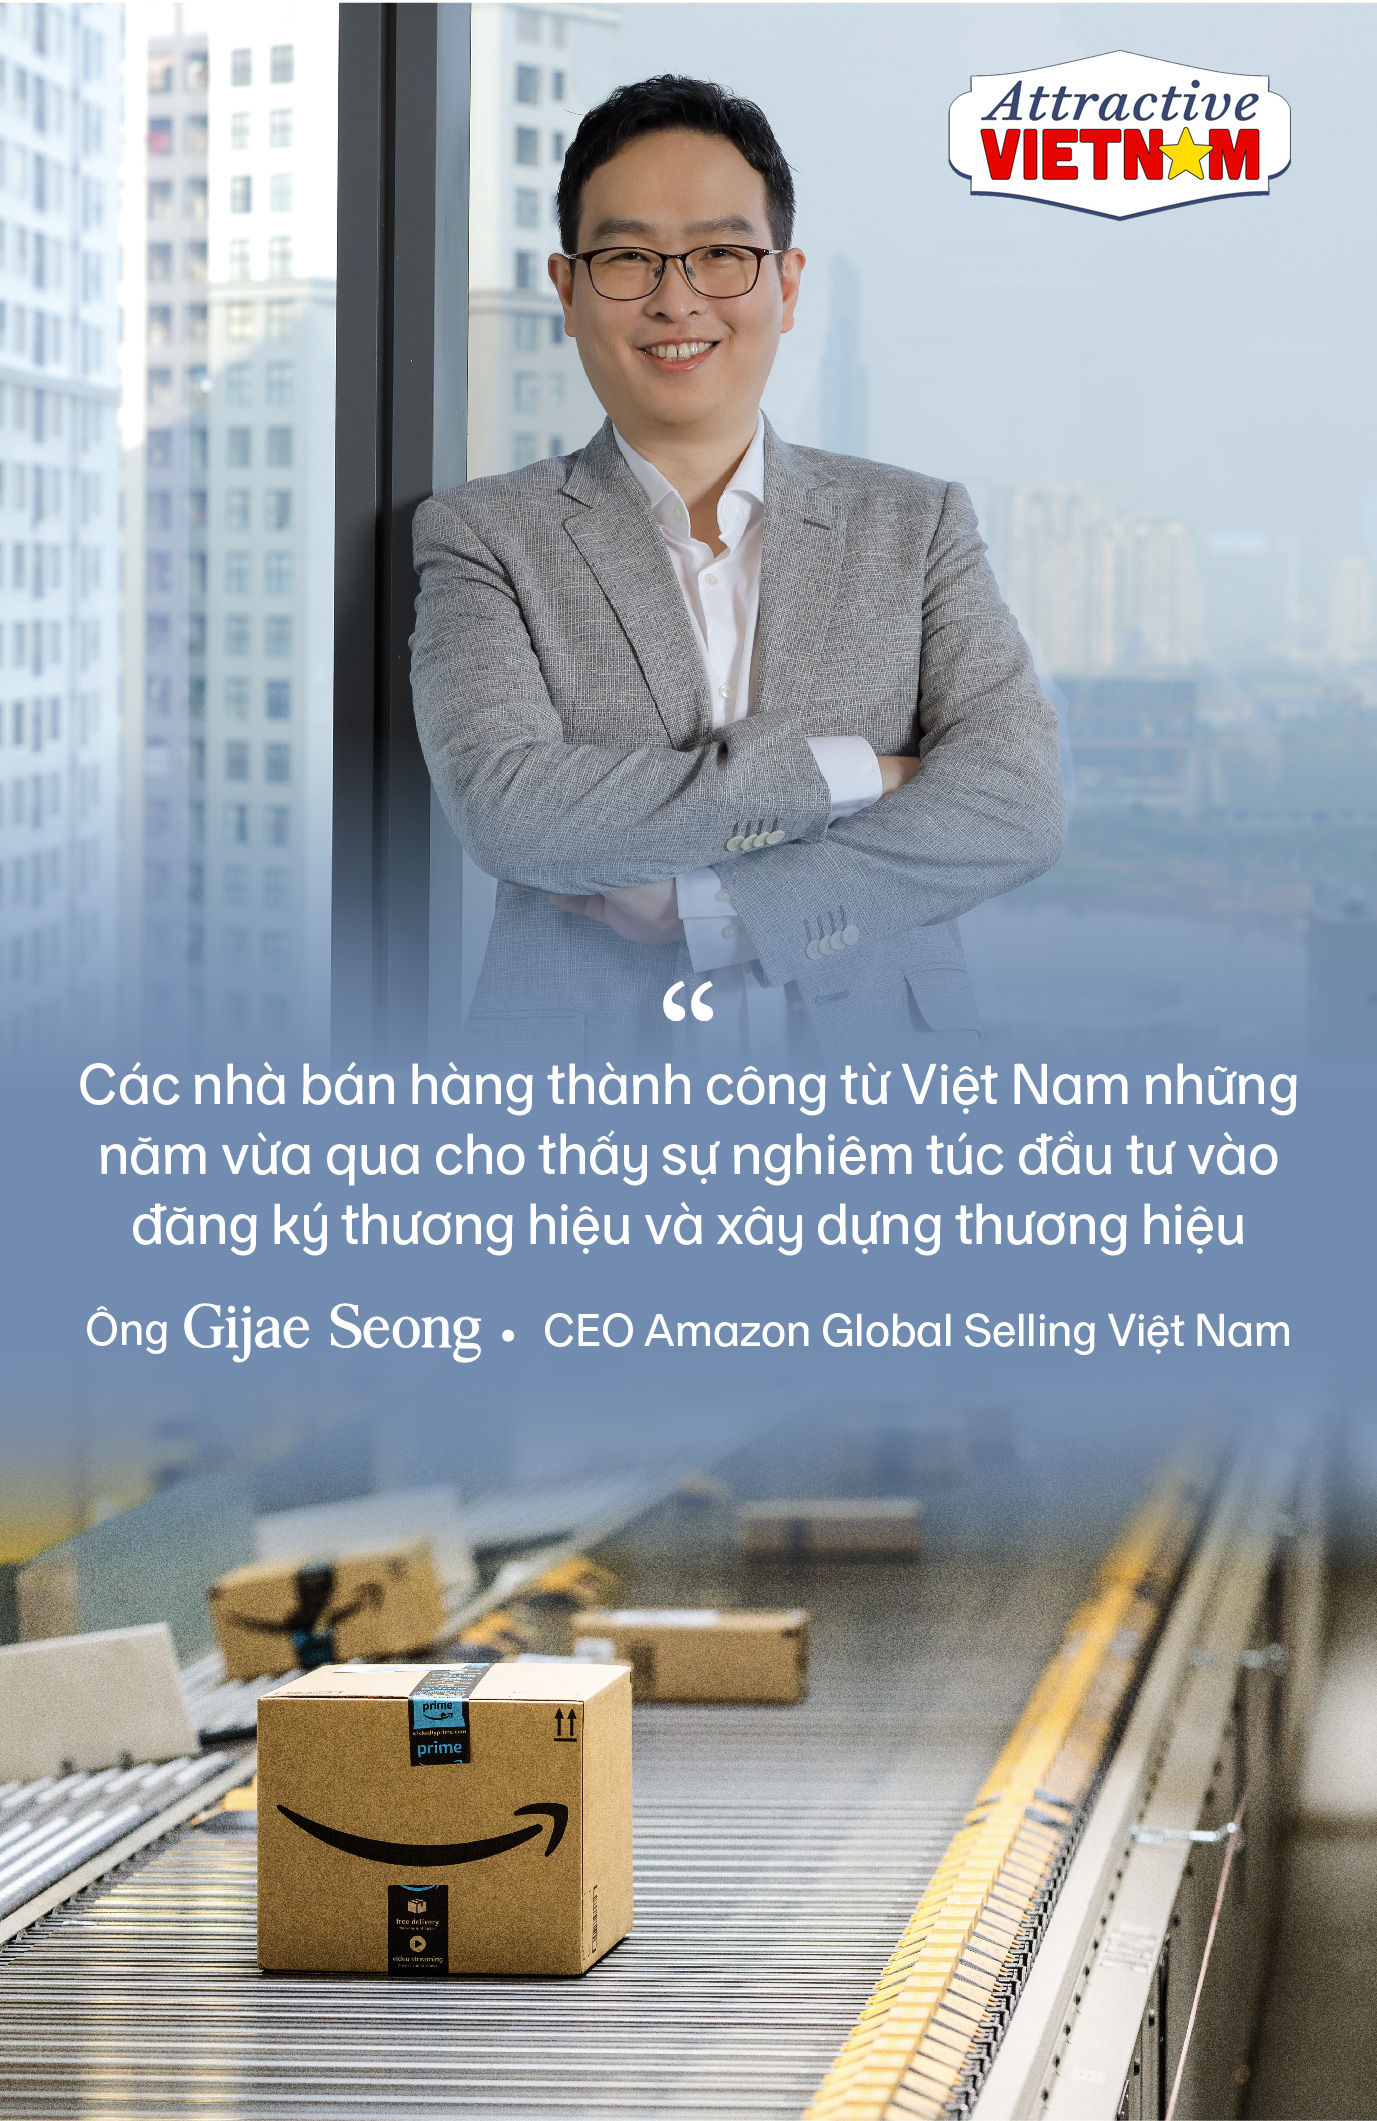 CEO Amazon Global Selling Việt Nam chỉ ra thế mạnh đặc biệt giúp Việt Nam bùng nổ và trở thành thị trường trực tuyến sôi động nhất khu vực - Ảnh 11.